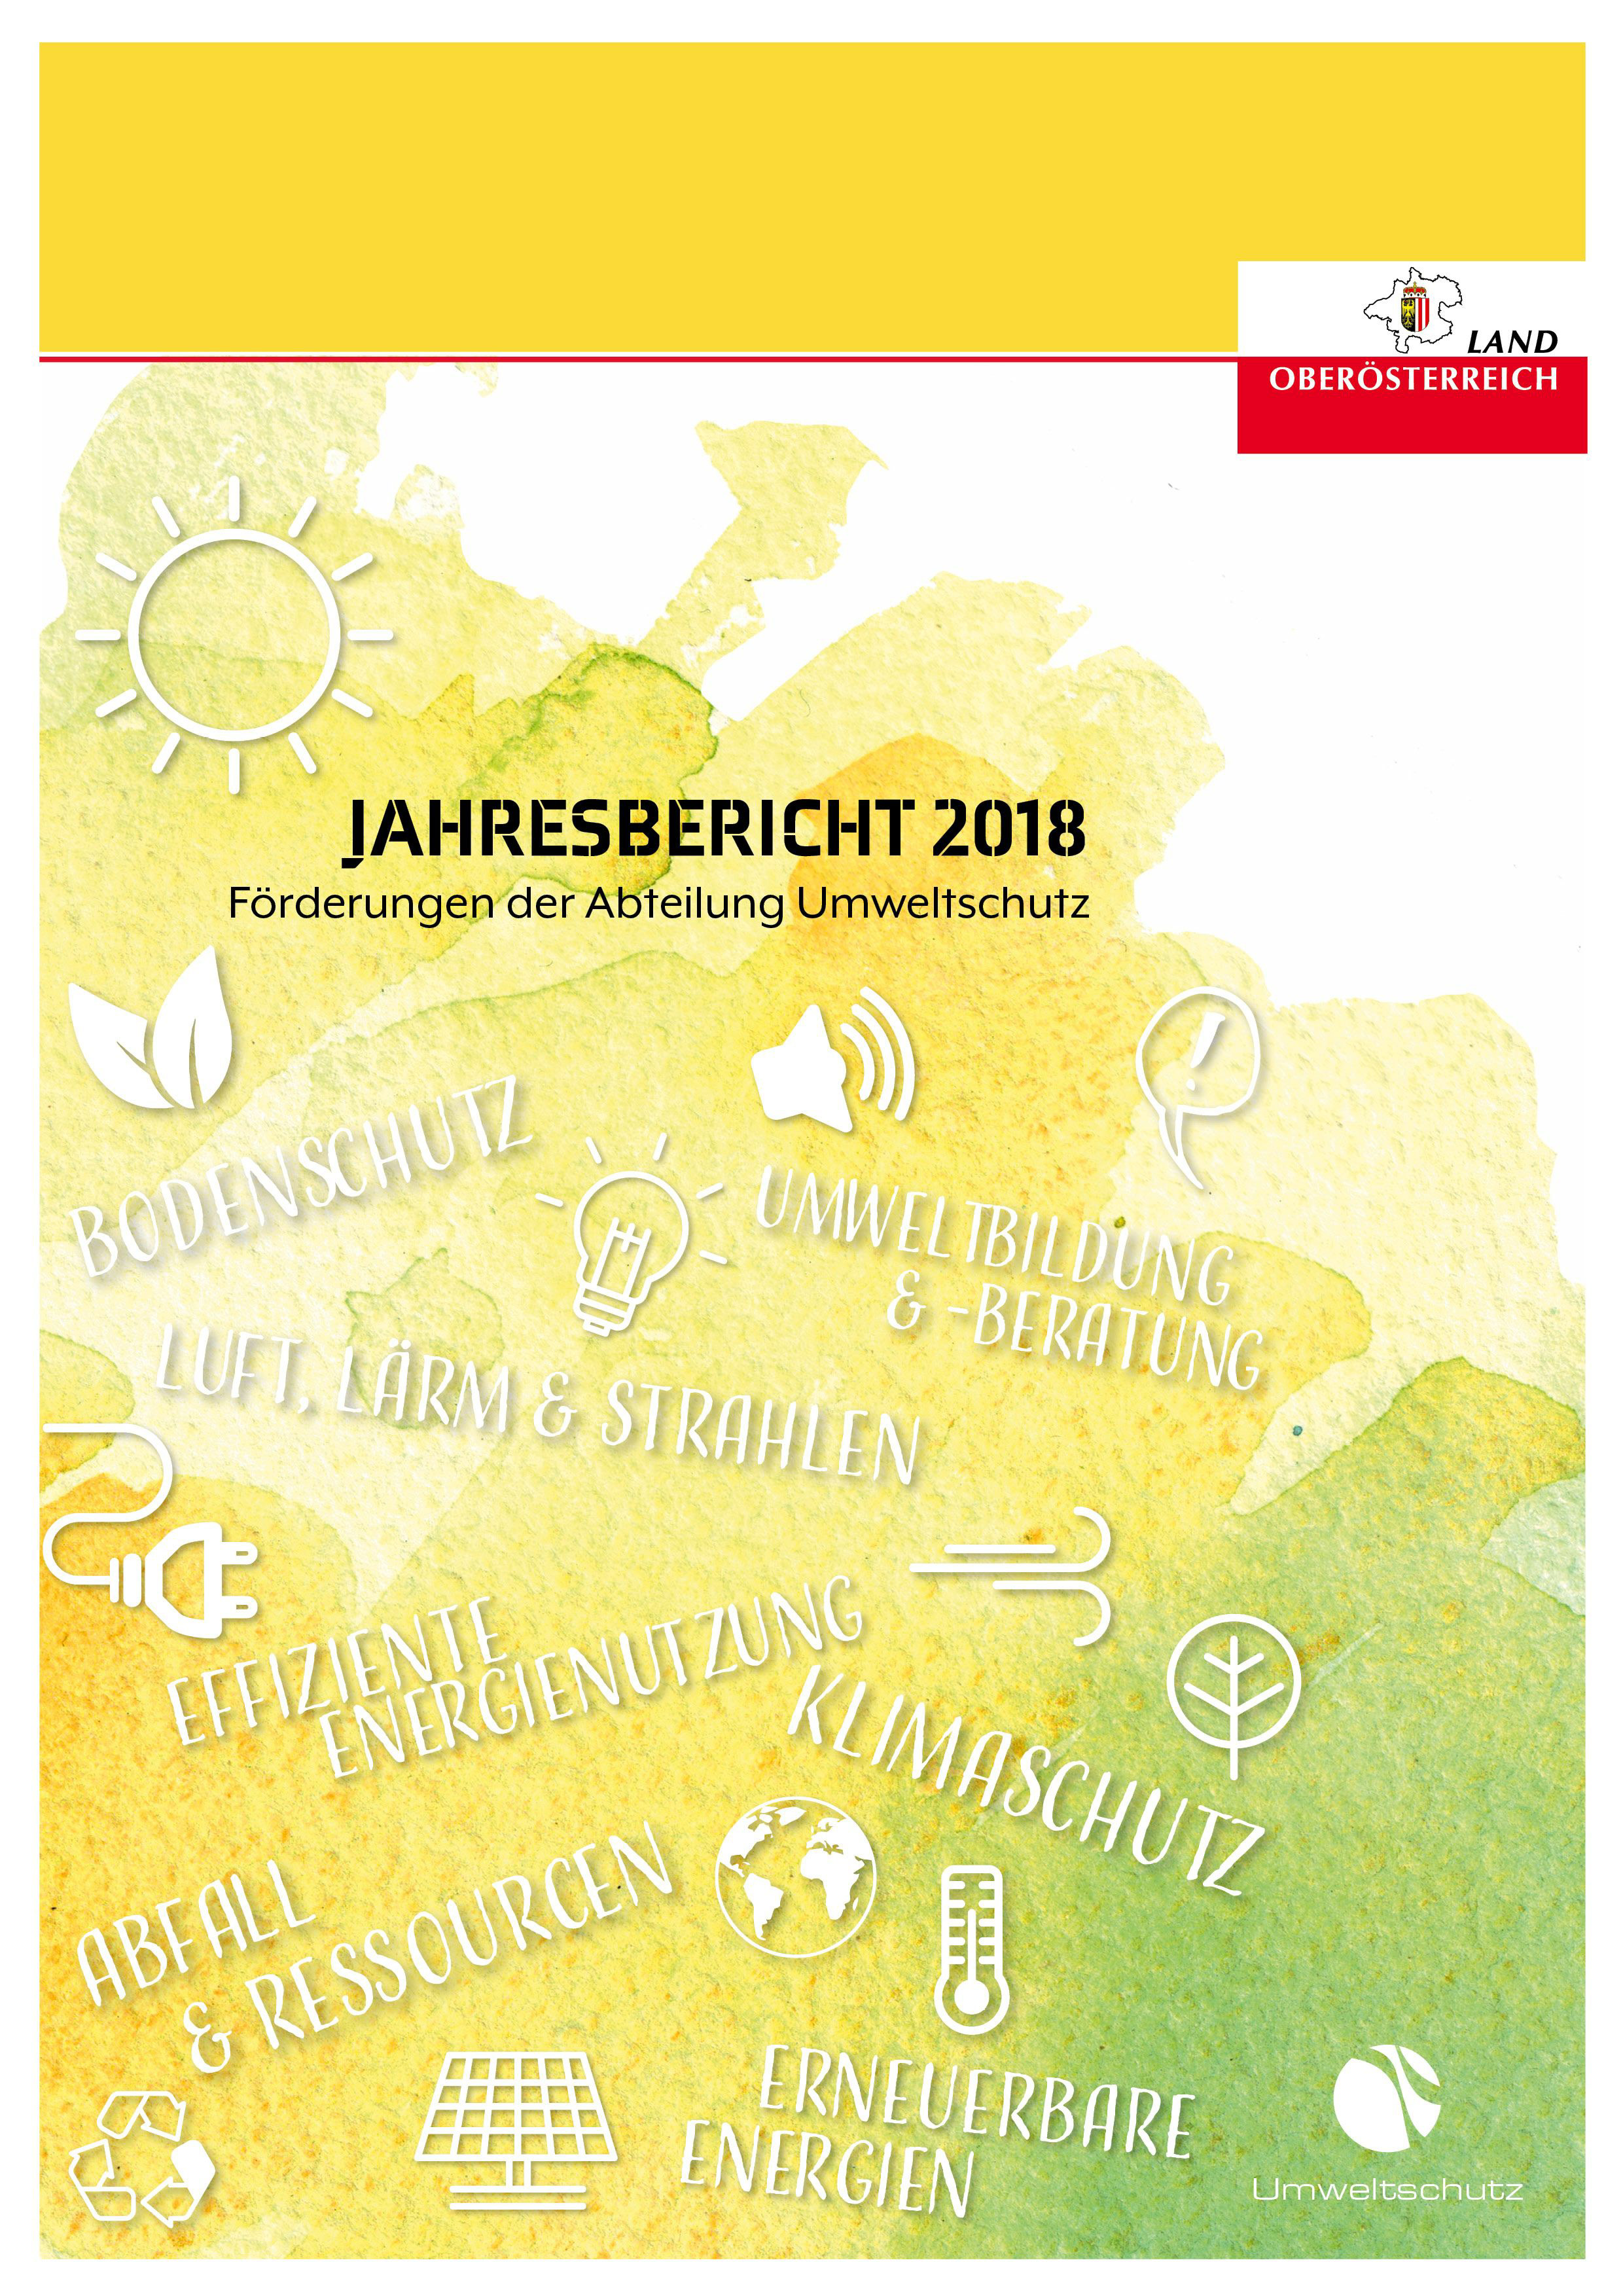 Förderungen der Abteilung Umweltschutz - Jahresbericht 2018